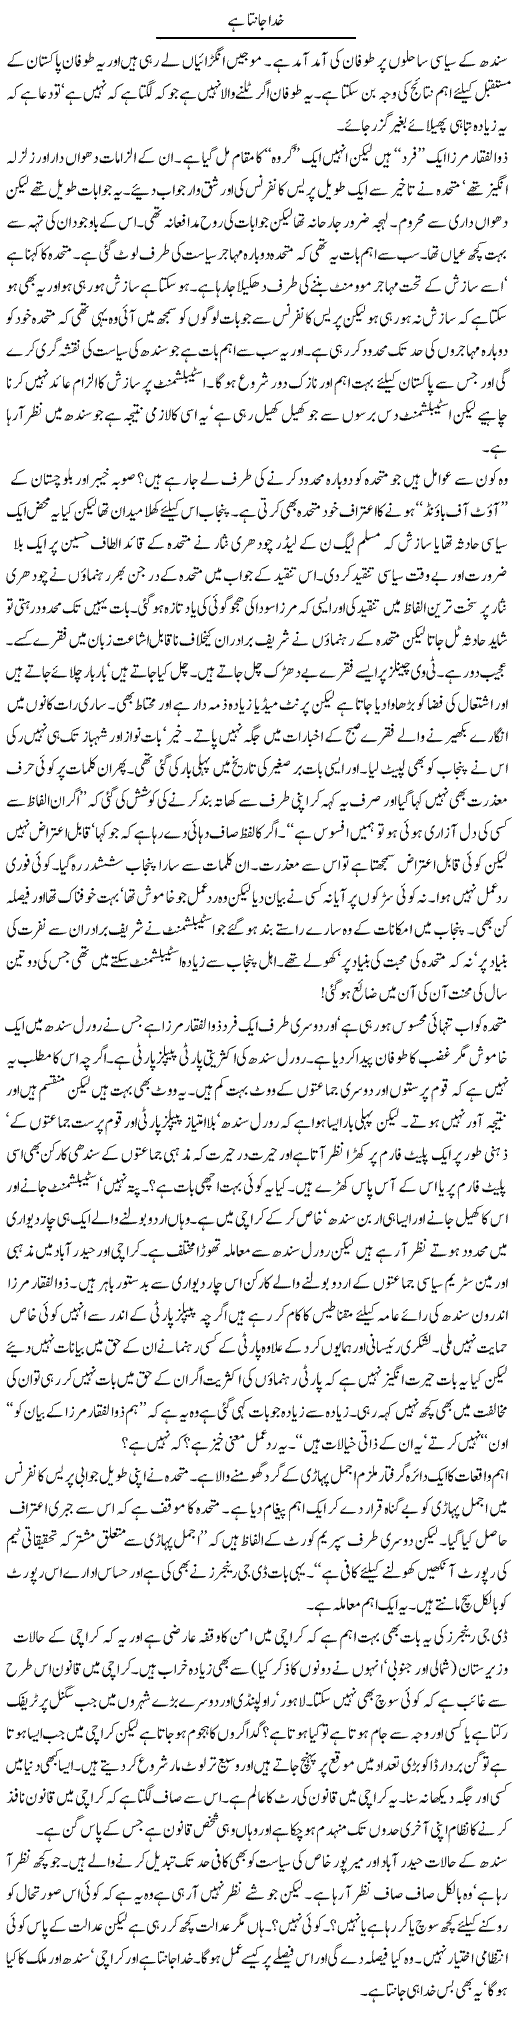 MQM and Mirza Express Column Abdullah Tariq 8 September 2011